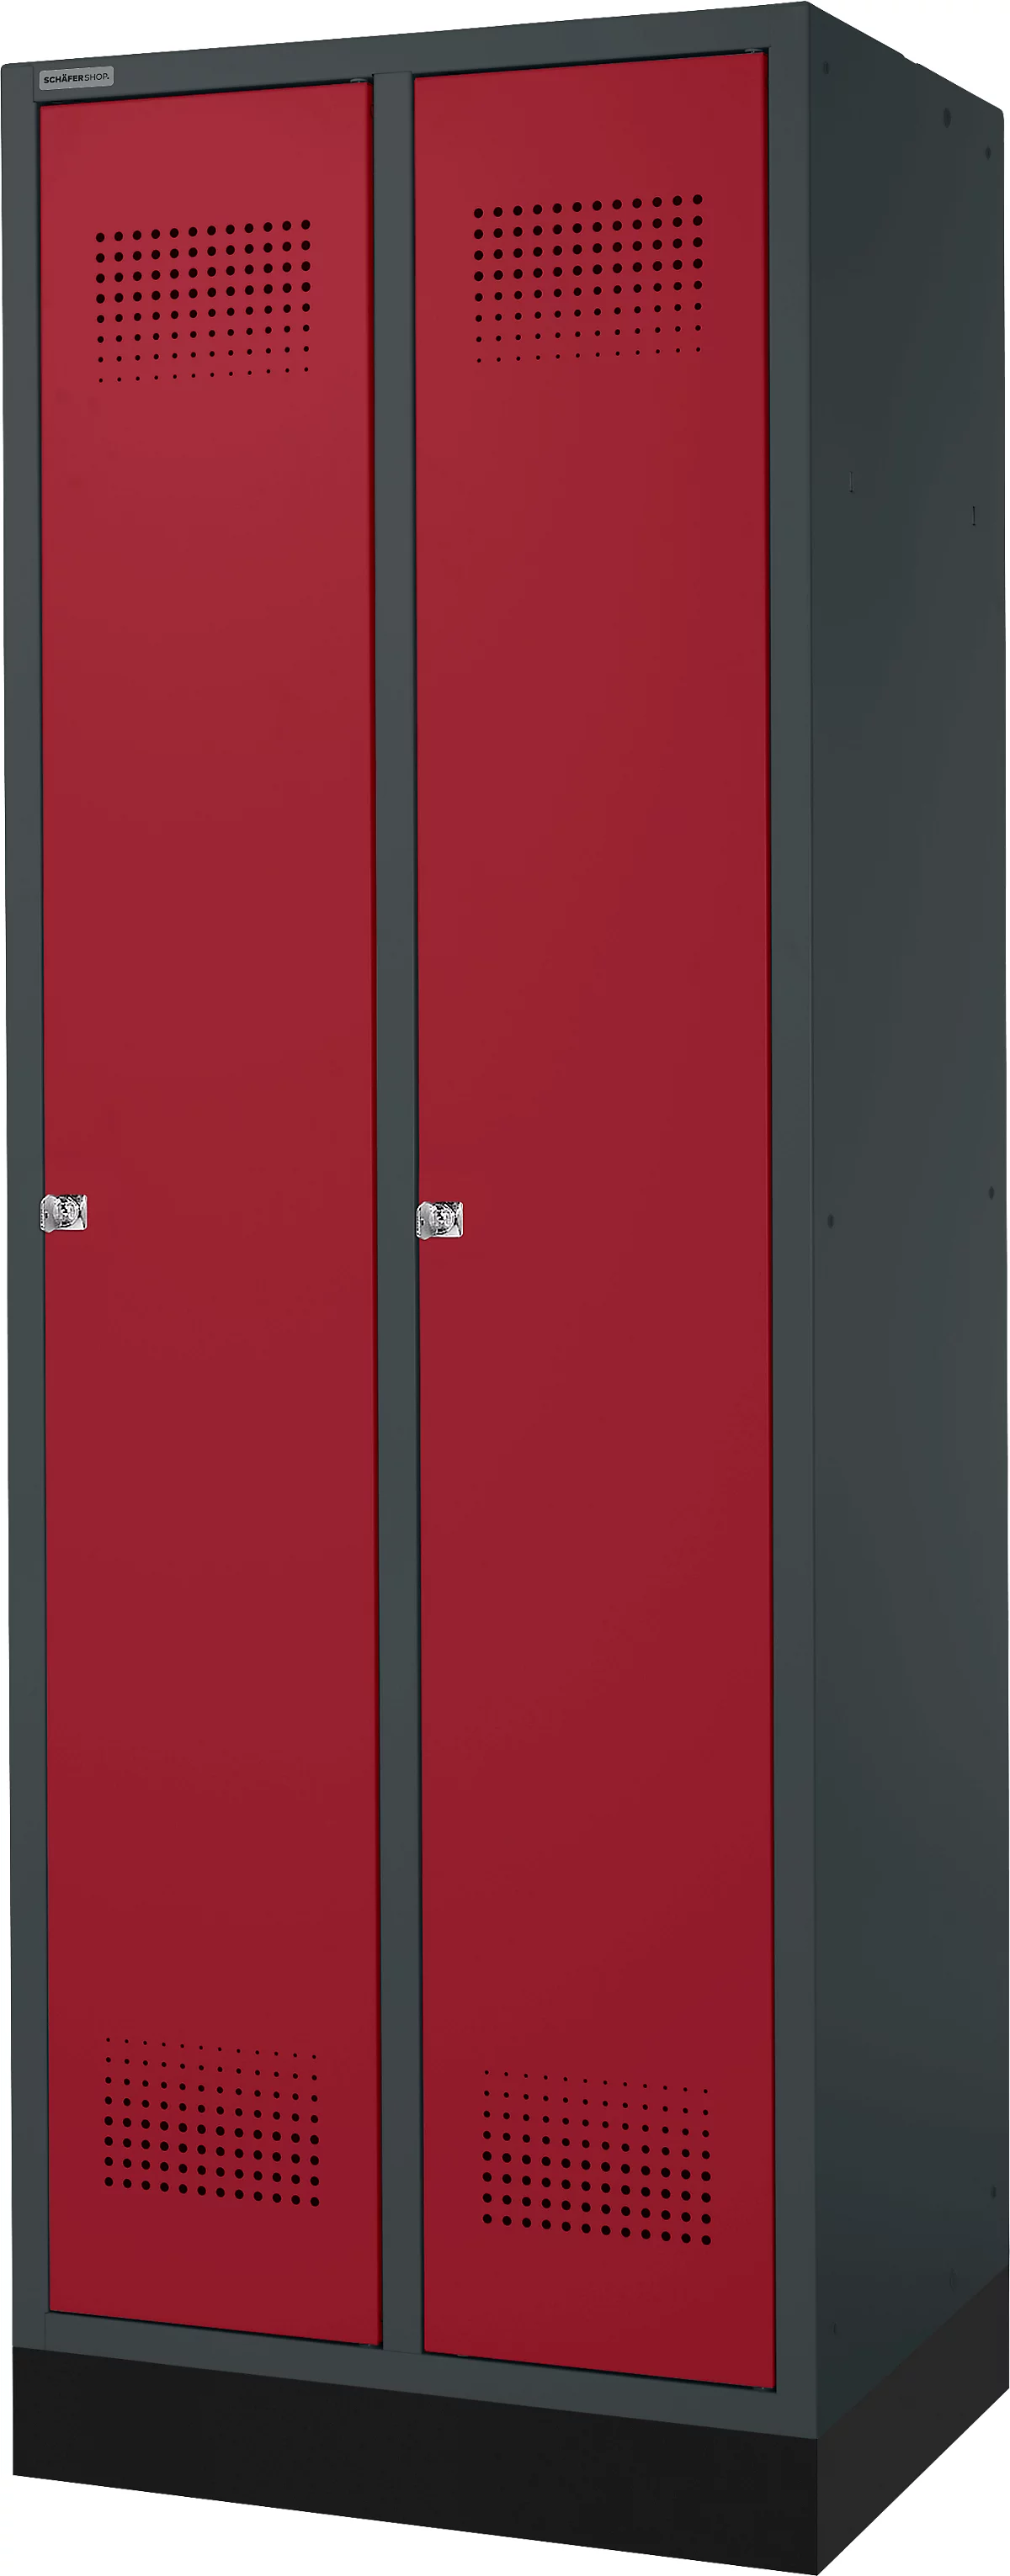 Schäfer Shop Genius Taquilla con zócalo, 2 compartimentos, anchura compartimento 300 mm, cerradura de cilindro, antracita/rojo rubí